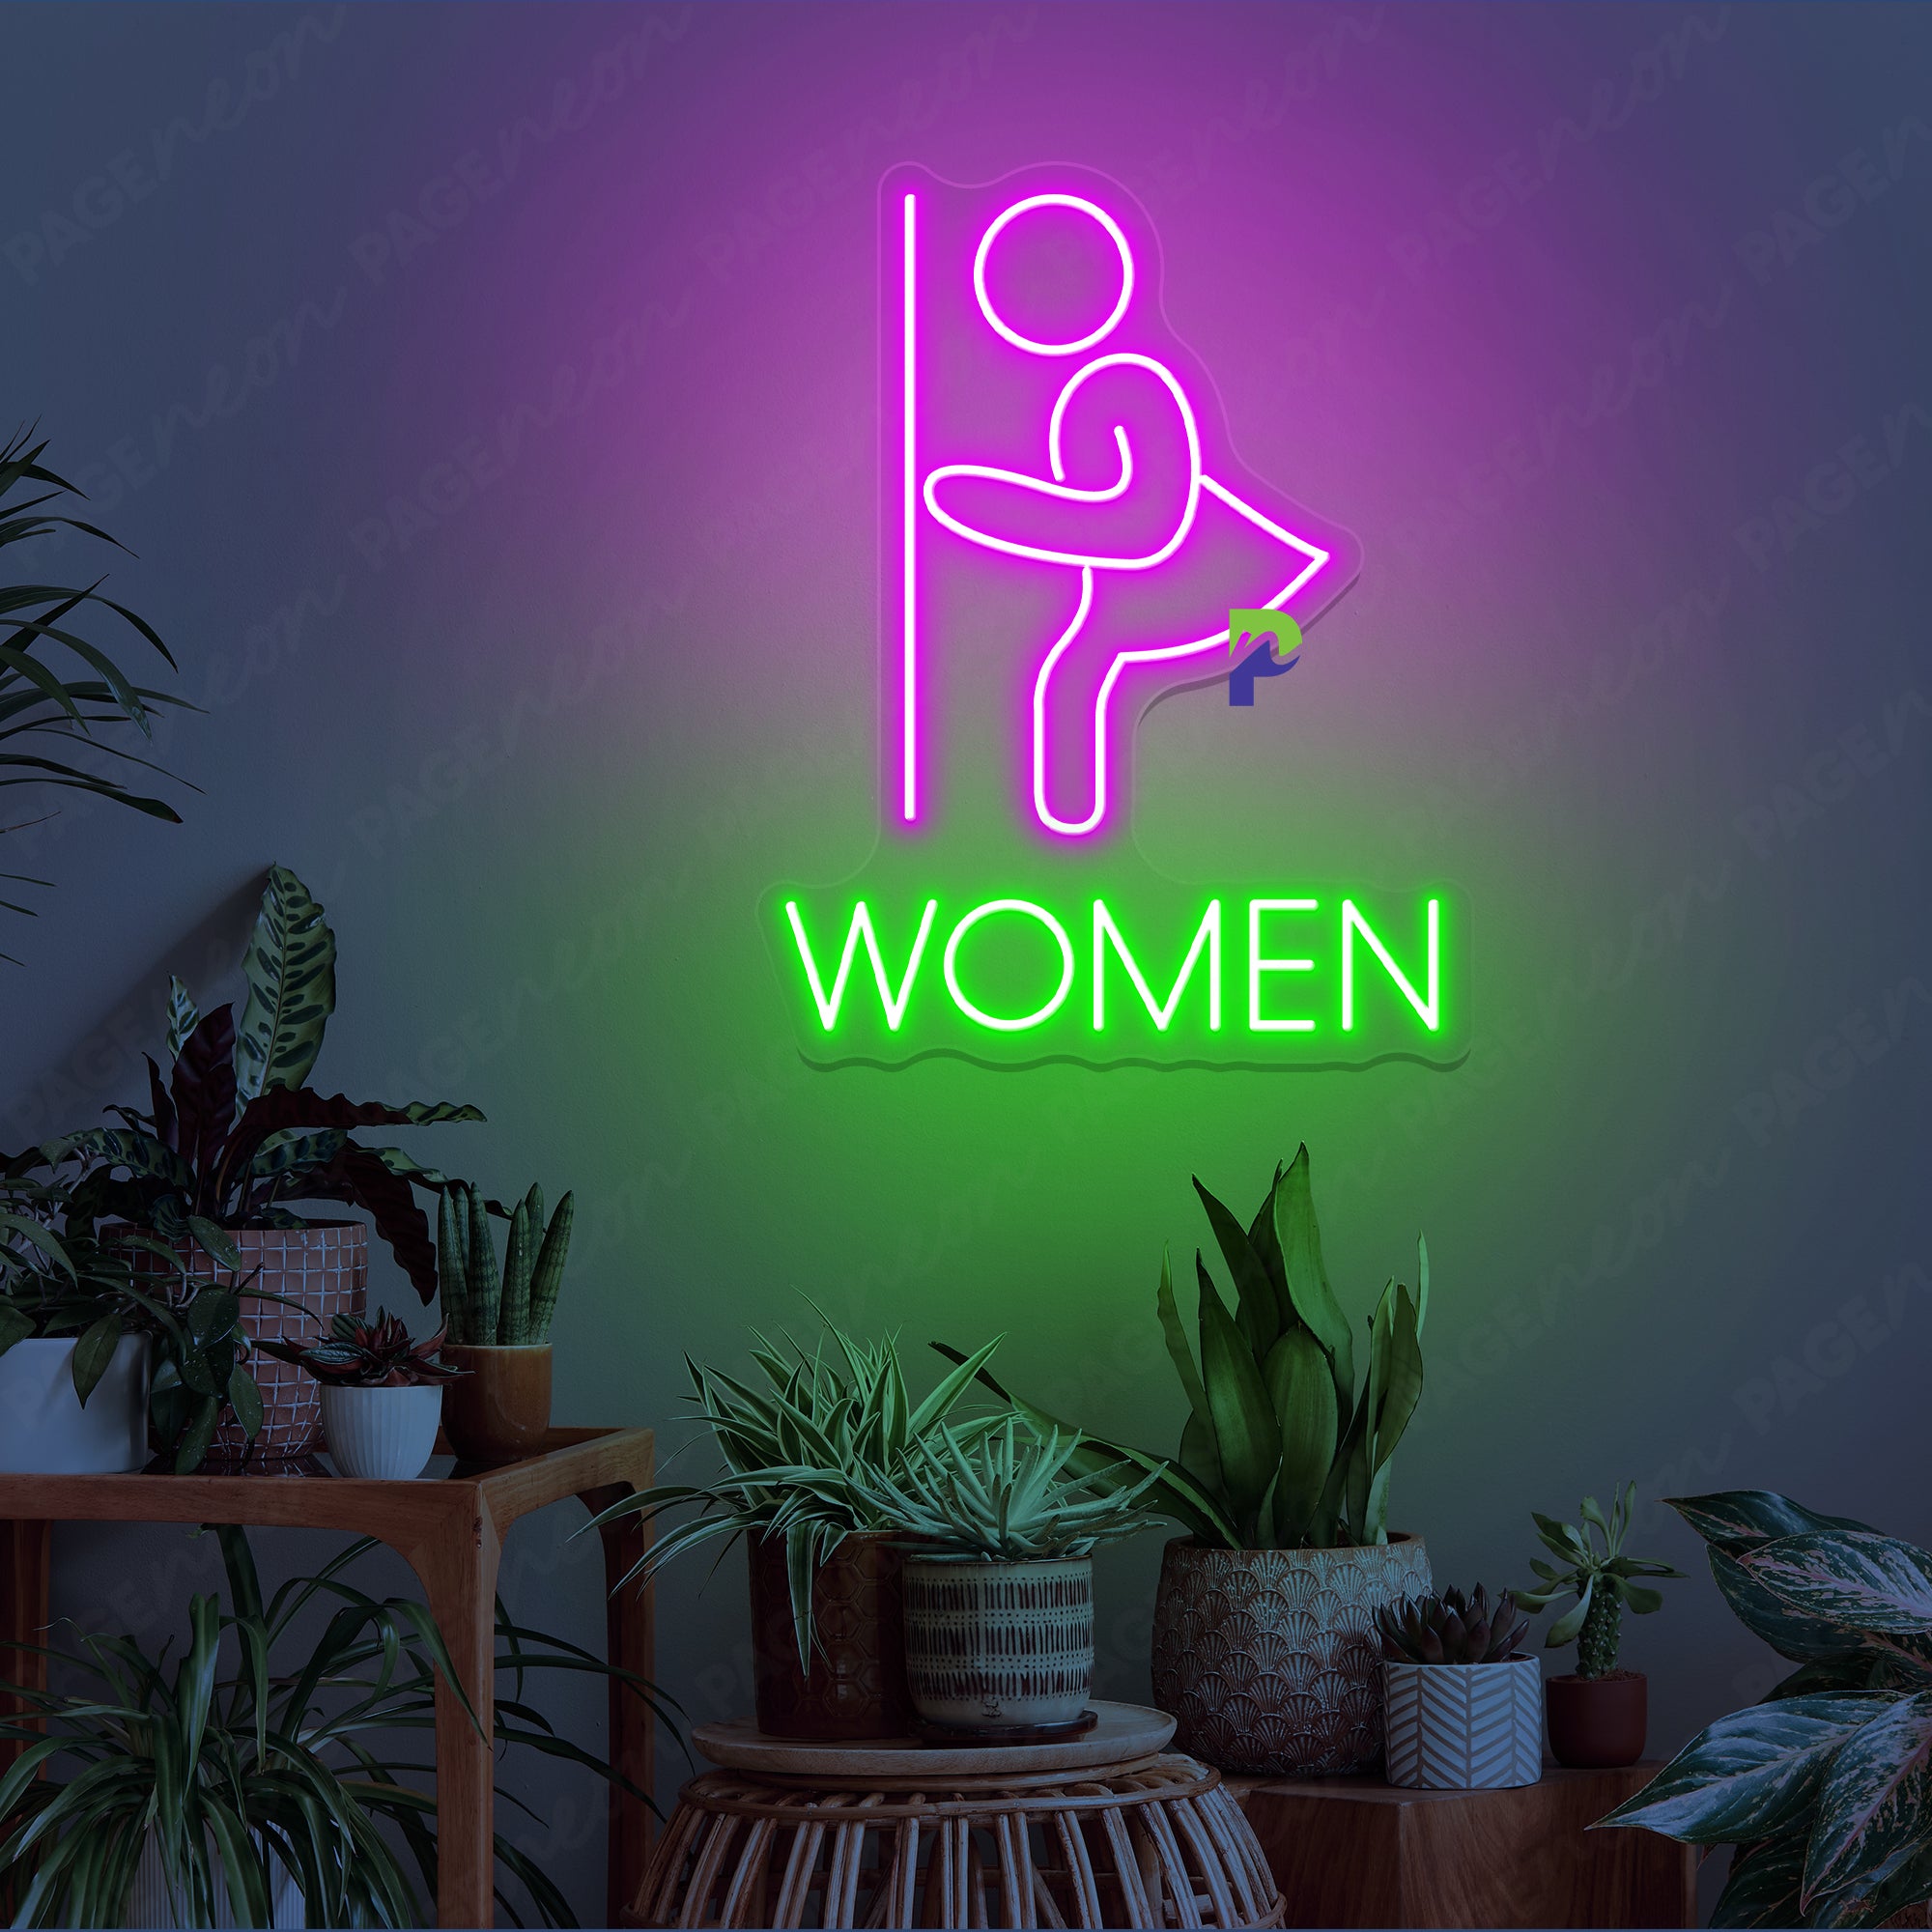 Women Bathroom Neon Sign Instruction Led Light